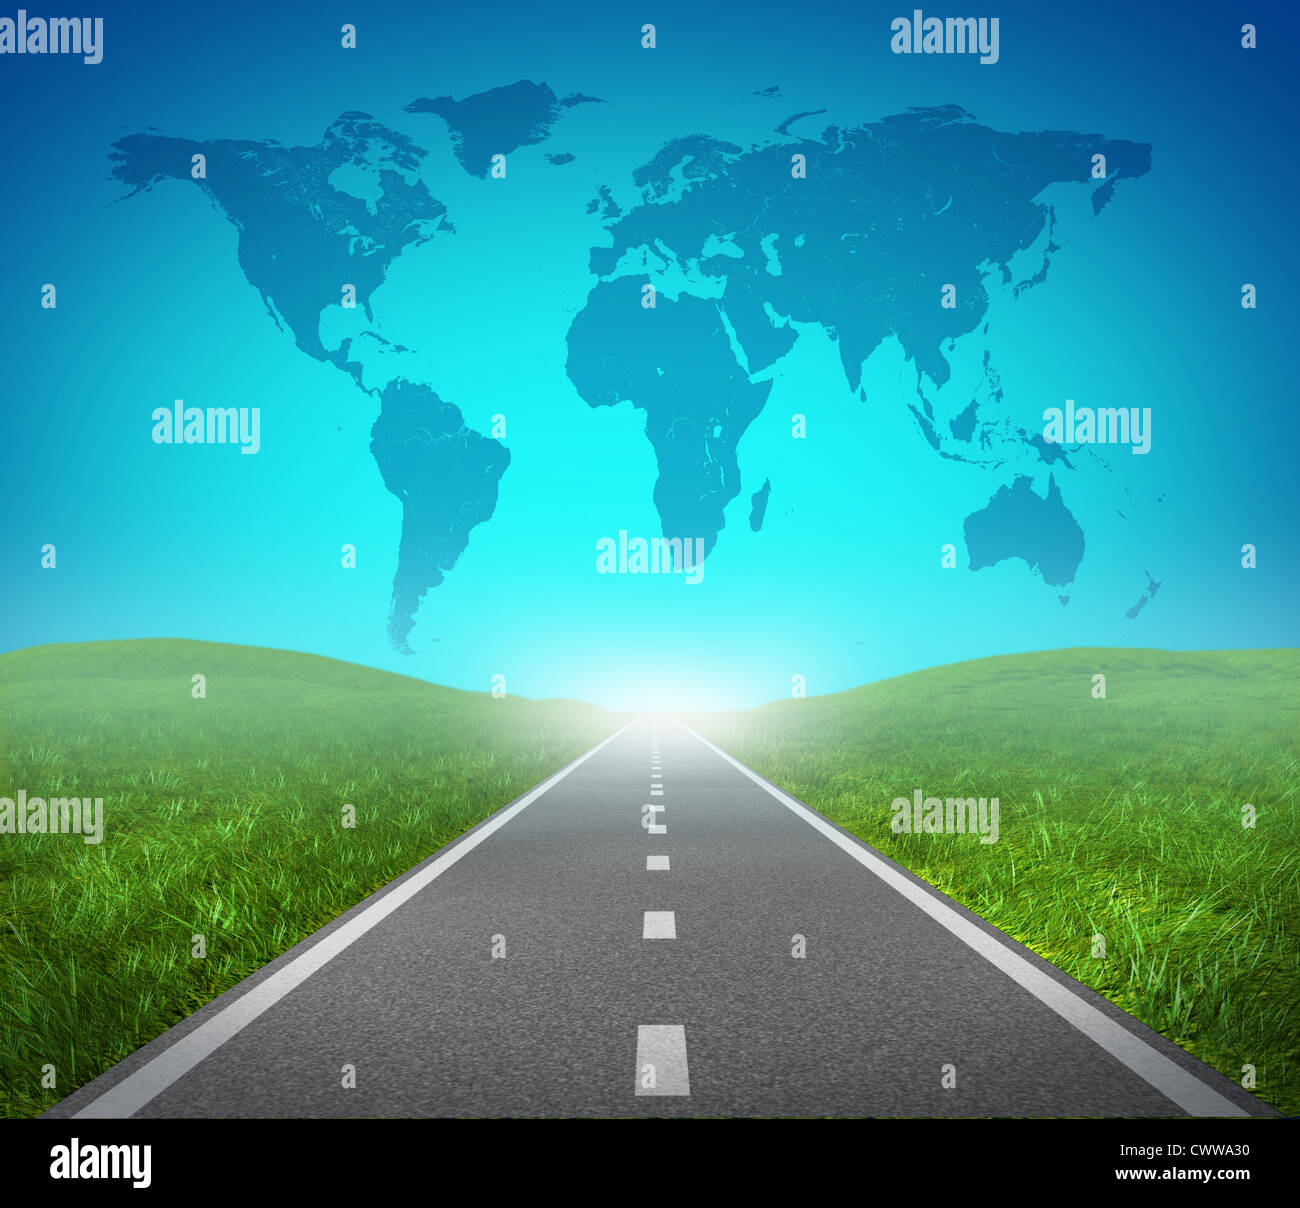 Route routier international et global map avec de l'herbe bien verte et l'asphalte des rues représentant le concept de voyage vers une destination internationale ciblée résultant en réussir dans le commerce et une orientation politique. Banque D'Images